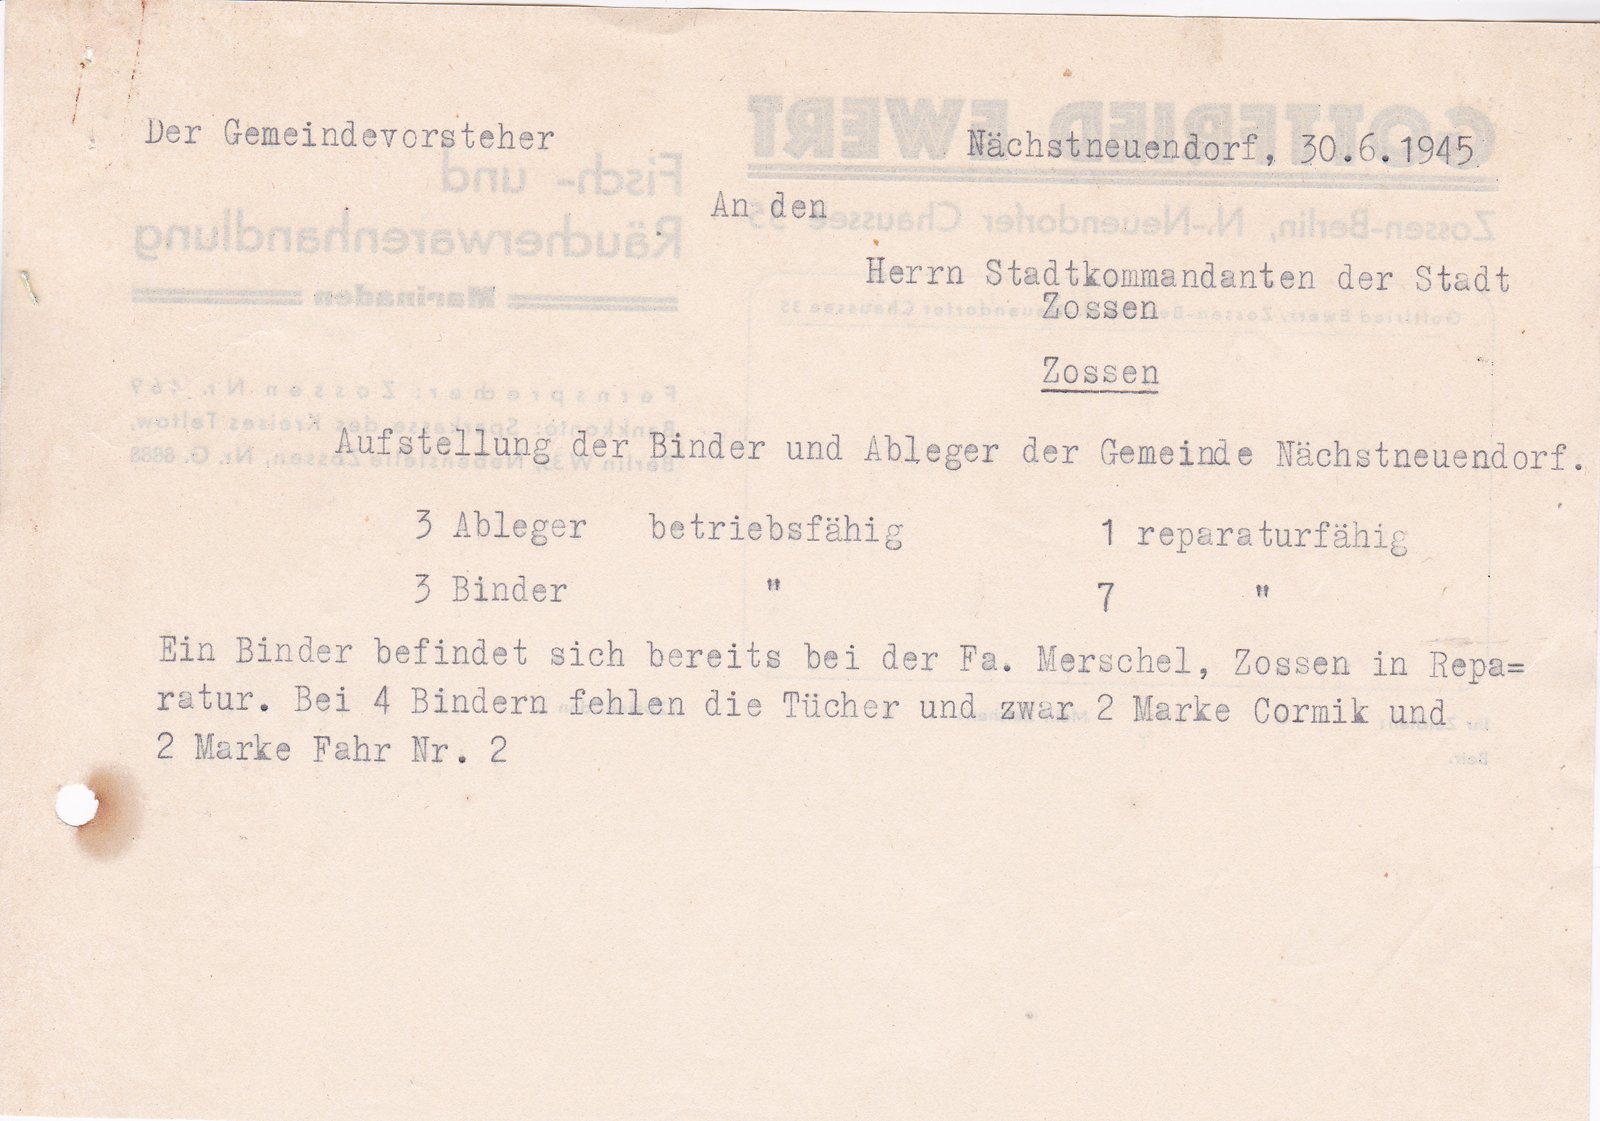 Gemvorst. NNeuendorf an Stadtkommandanten, 30.06.1945 (Heimatverein "Alter Krug" Zossen e.V. CC BY-NC-SA)